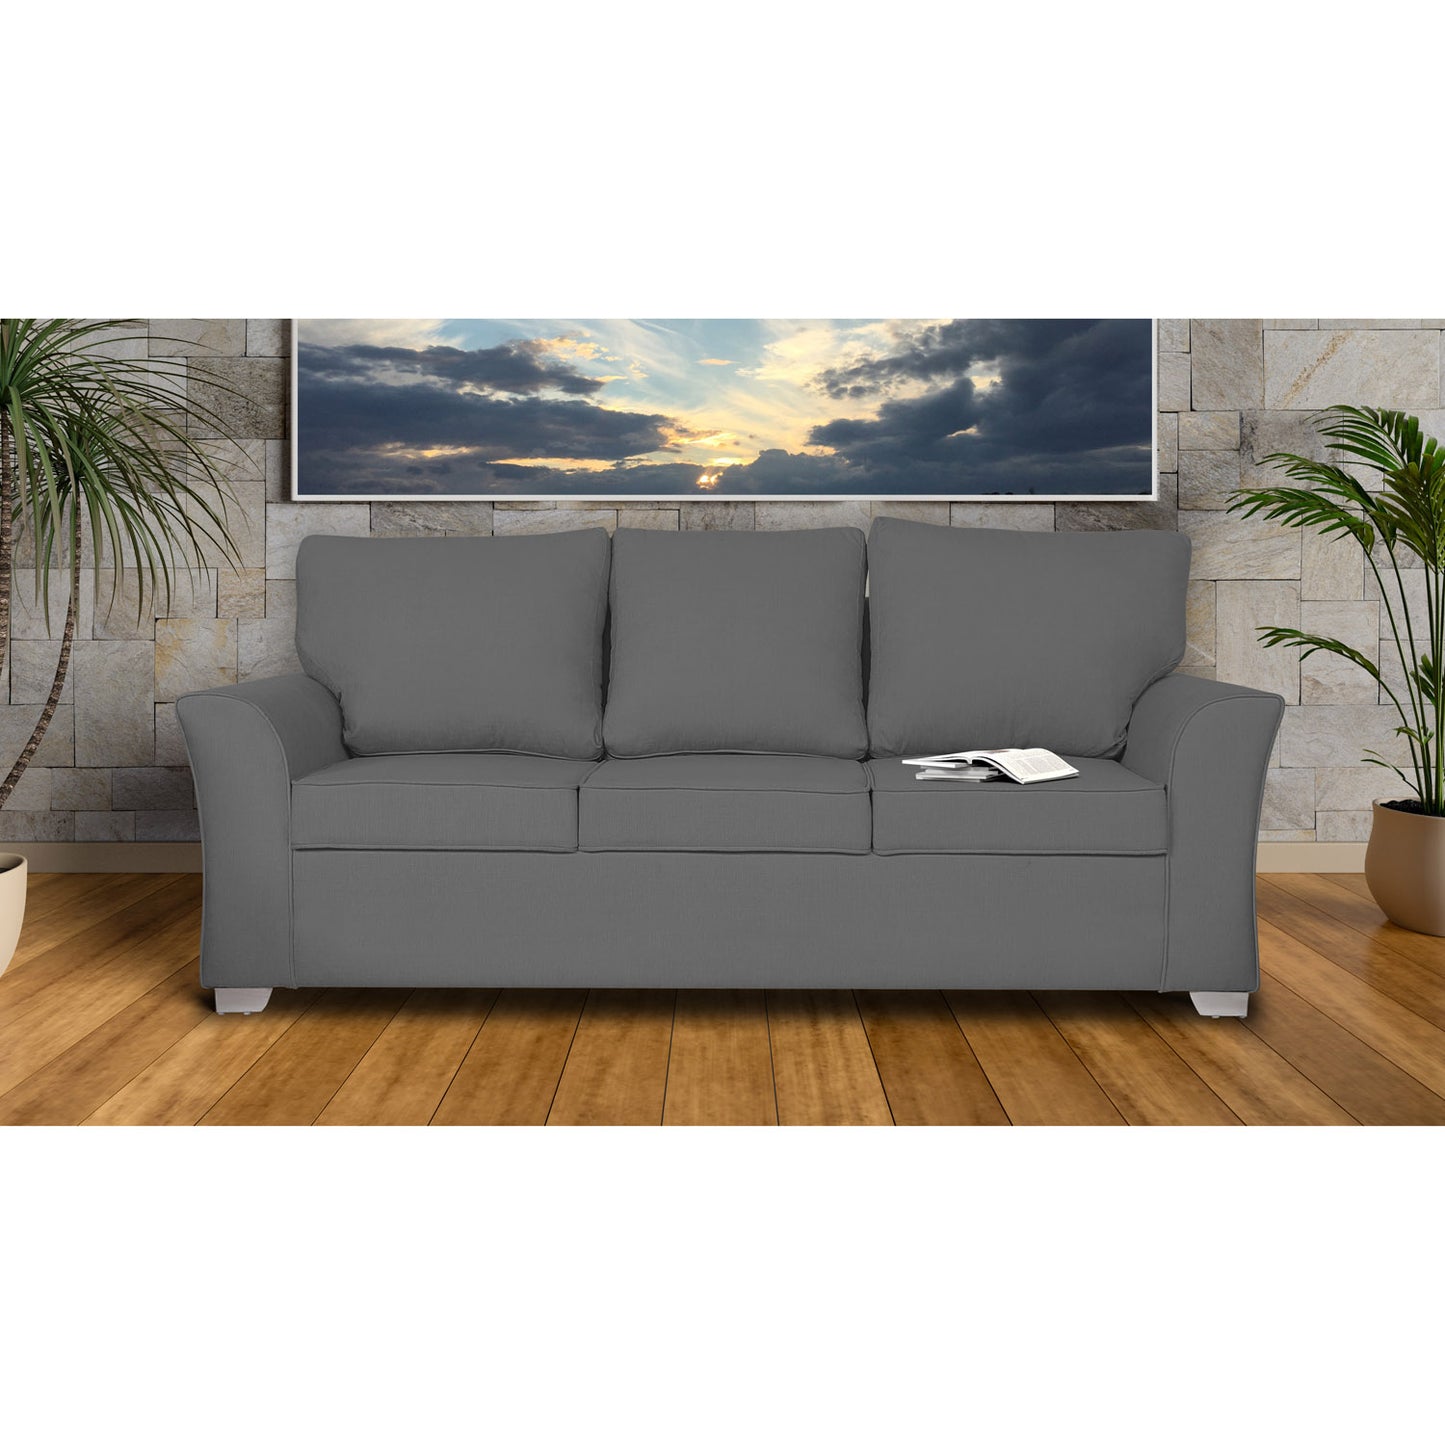 Adorn India Alexia 3 Seater Sofa (Grey)